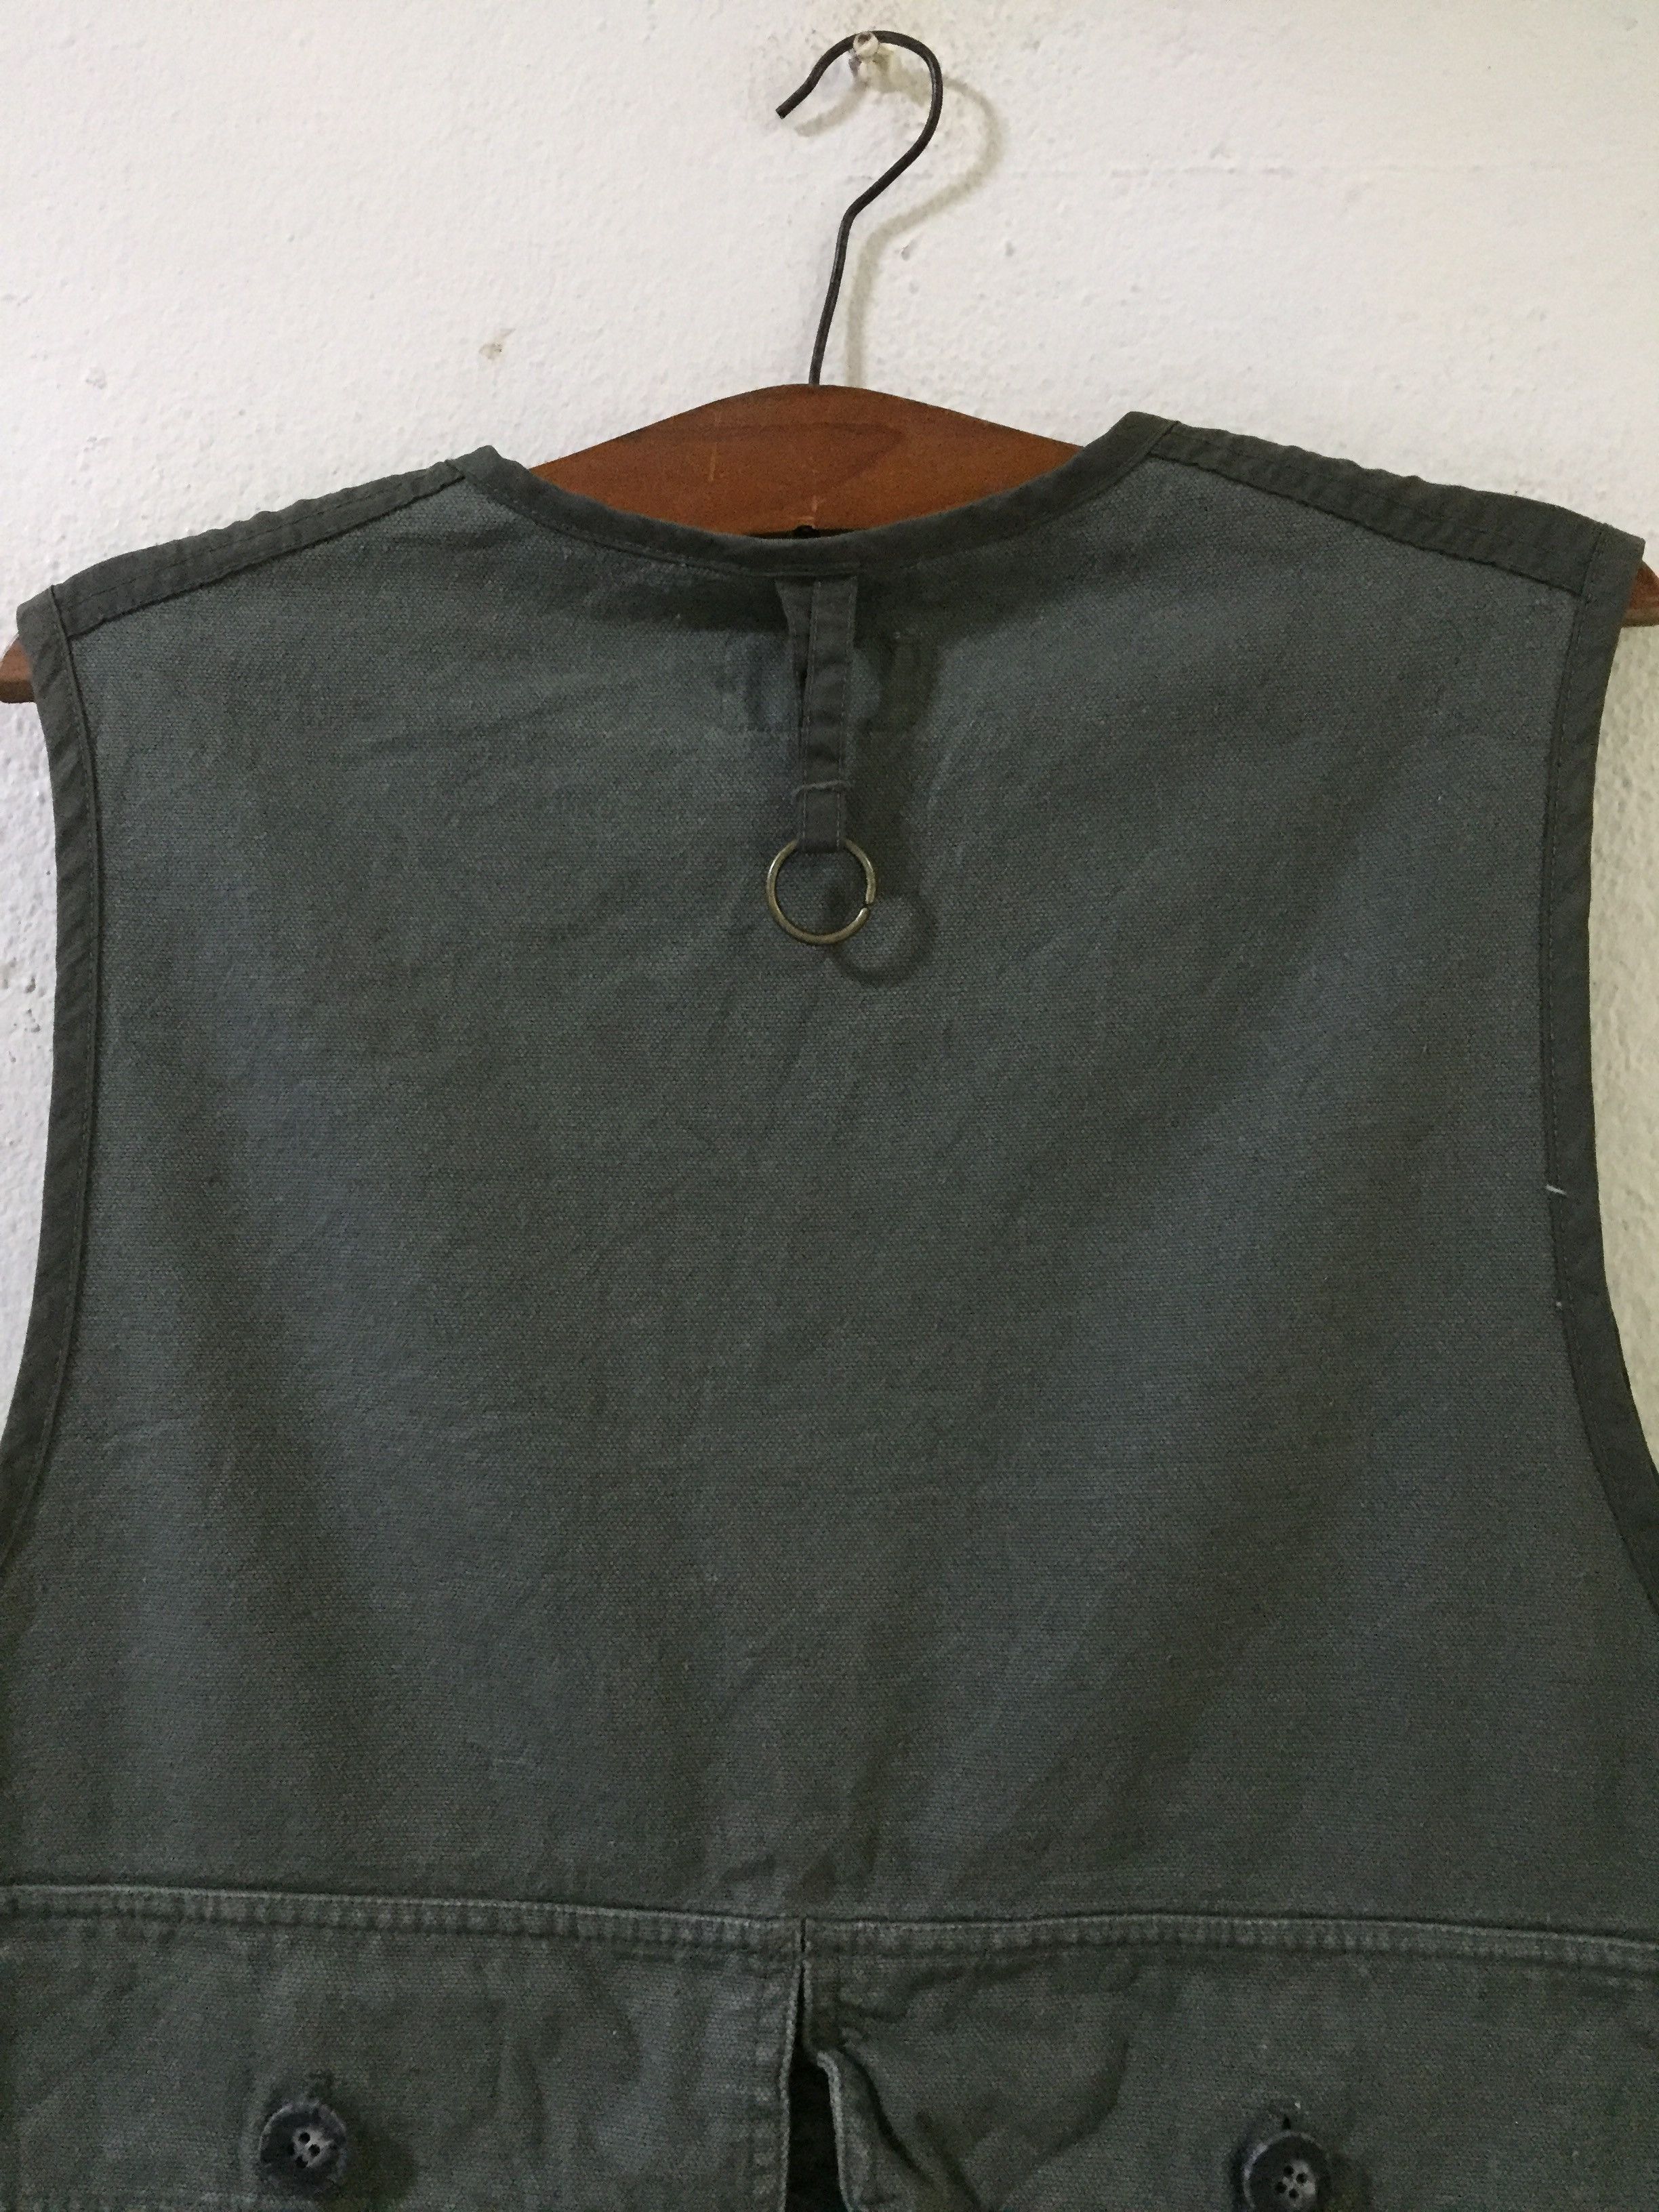 Vintage Vintage Columbia Tactical/Fishing Vest Men's Gilet Size L